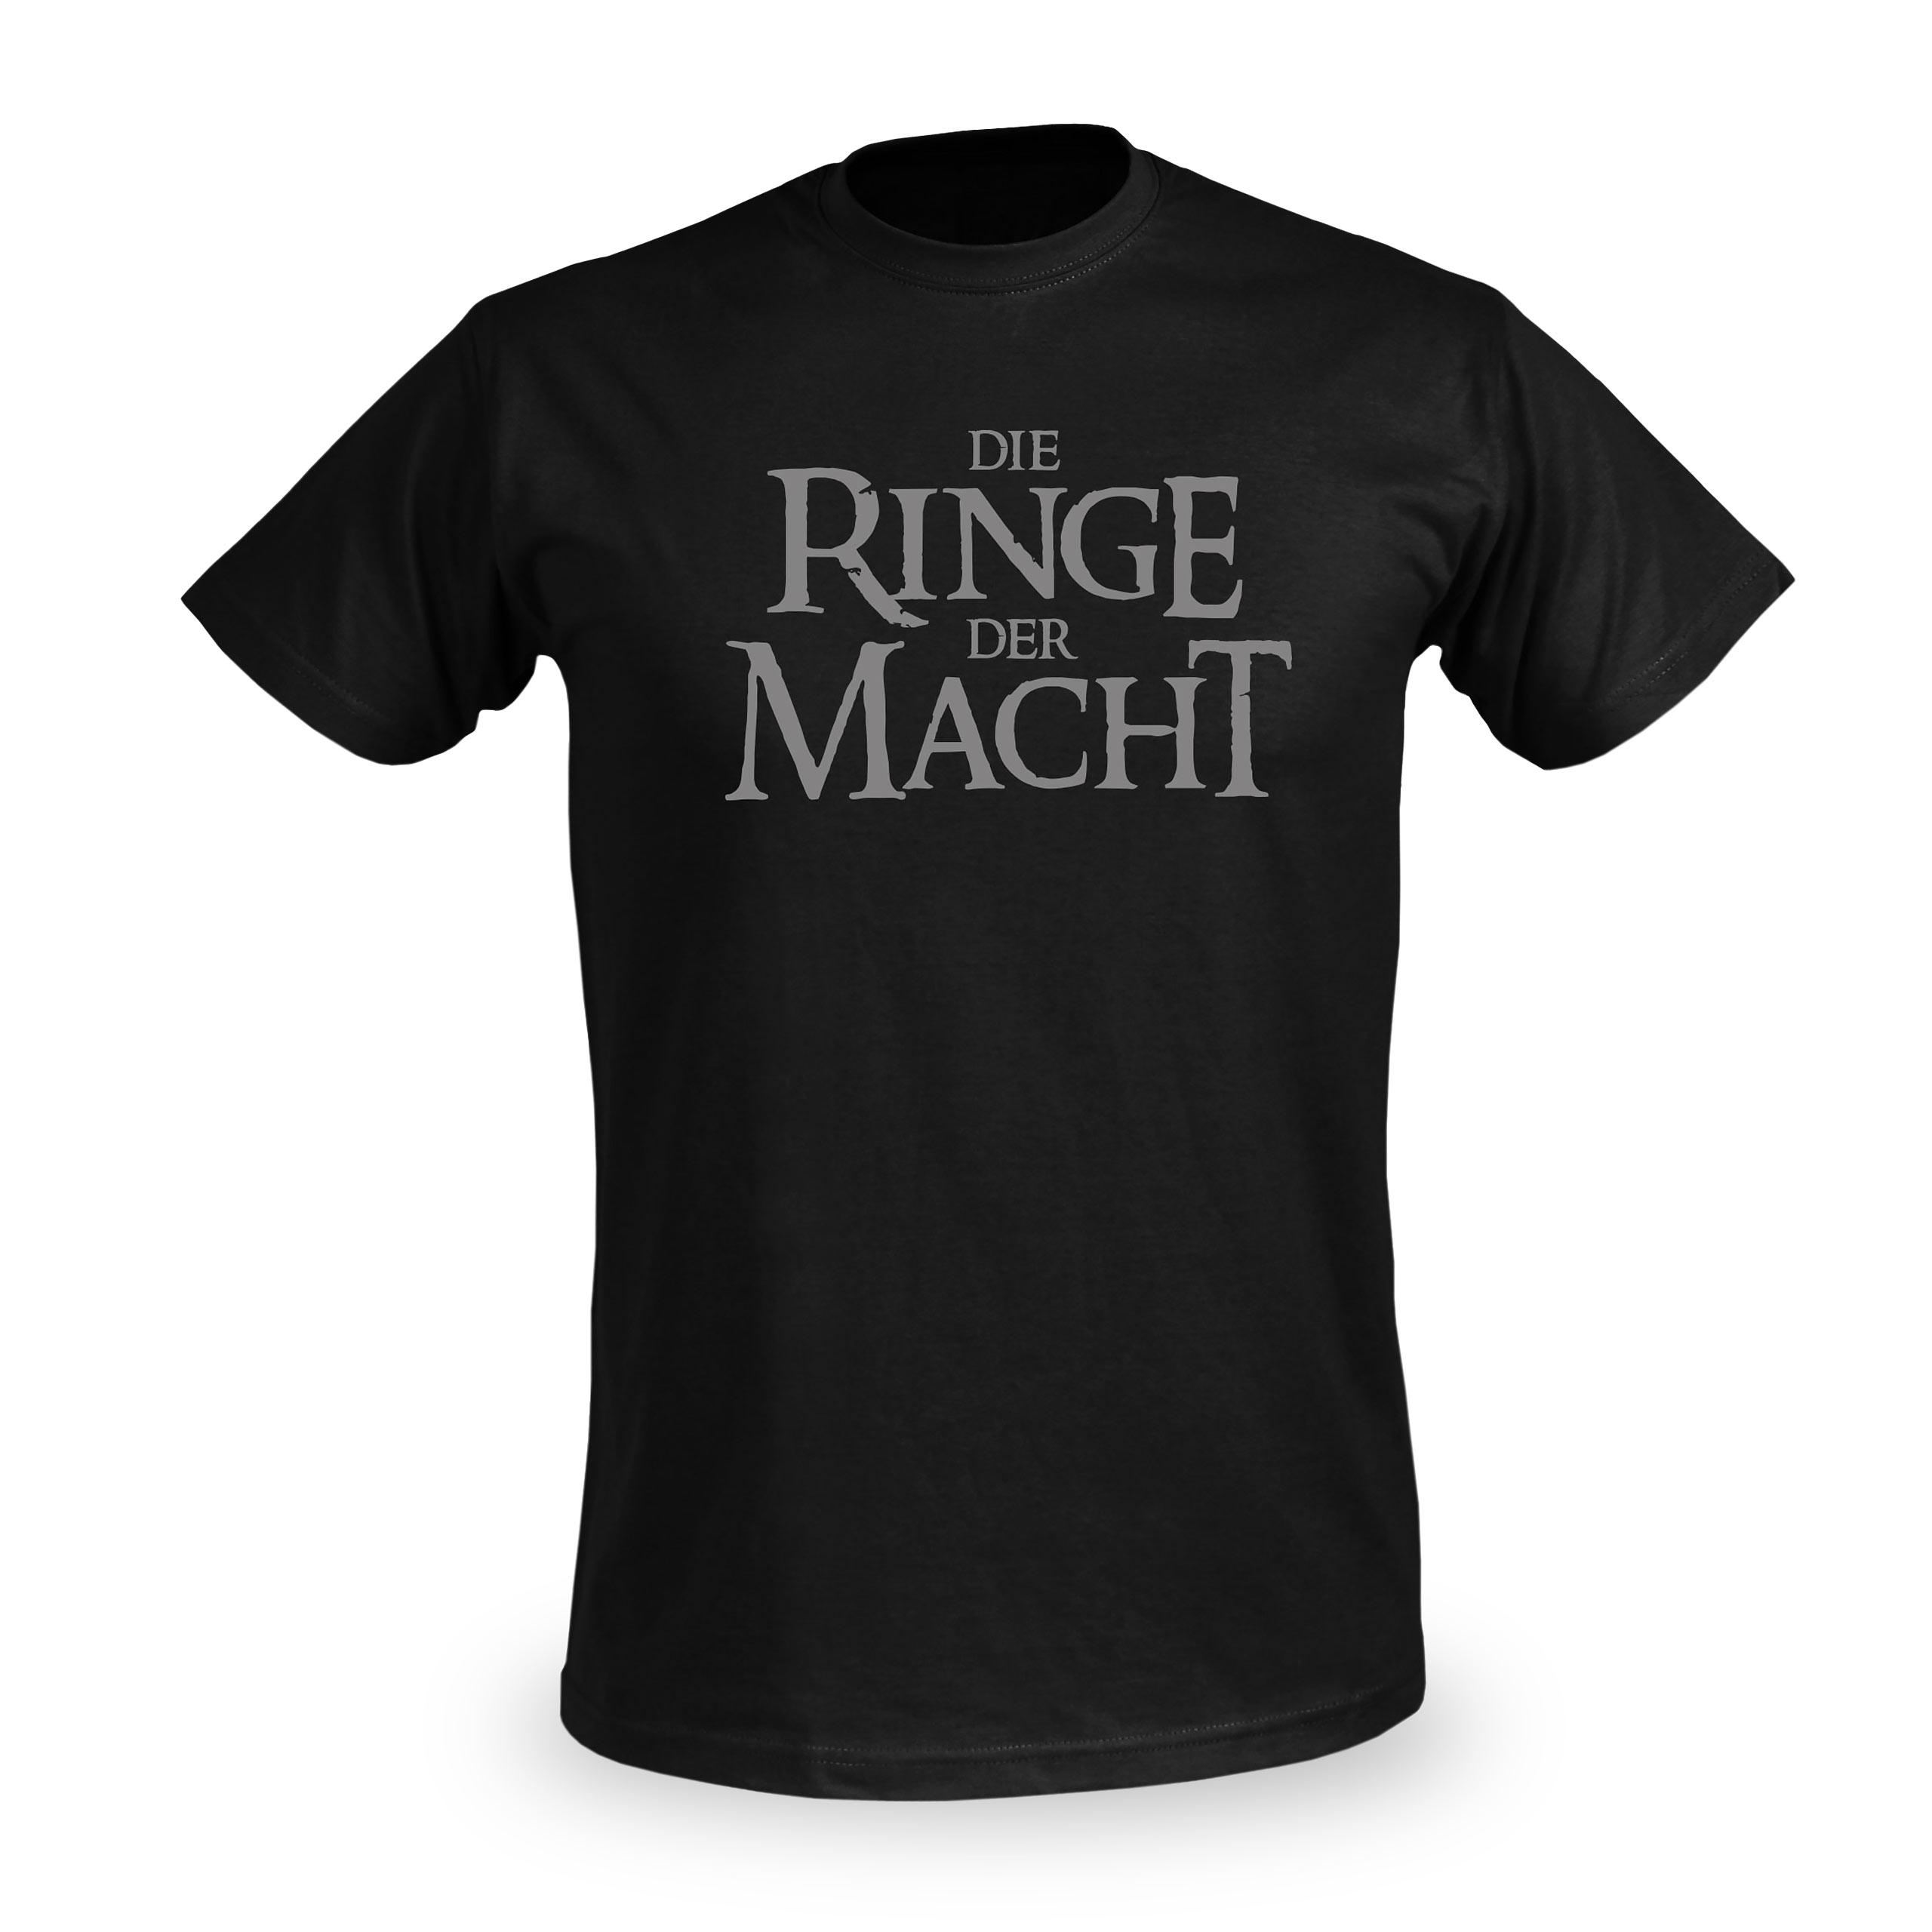 De Ringen van Macht T-Shirt voor de Heer van de Ringen Fans